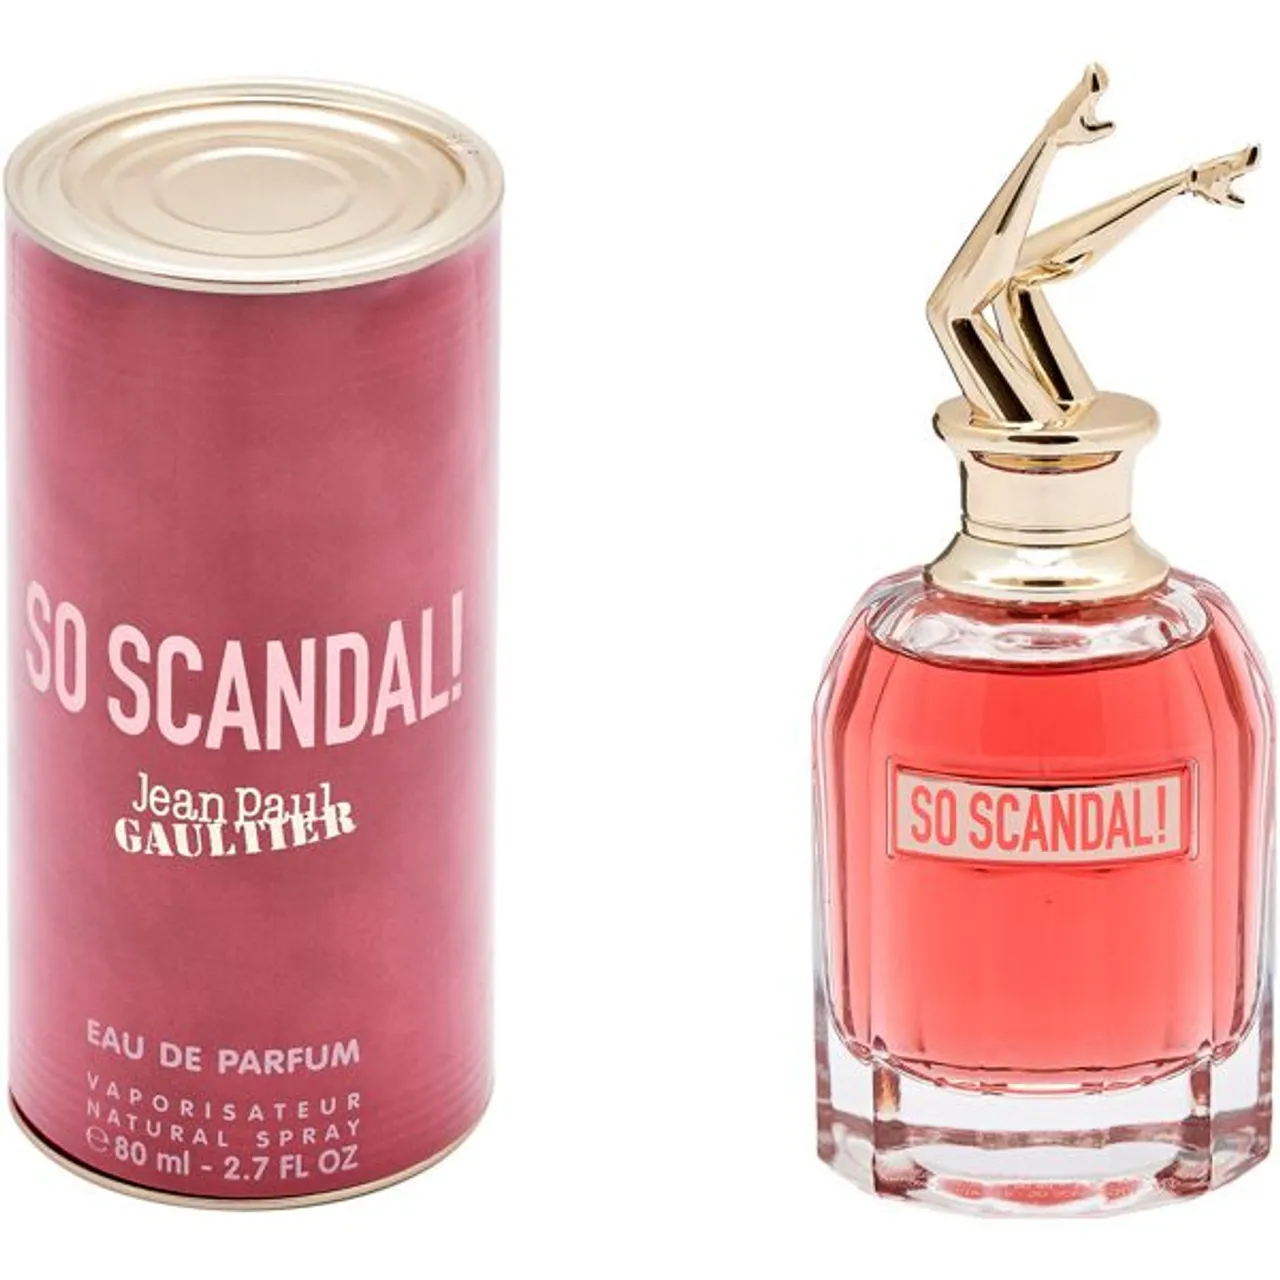 Eau de Parfum JEAN PAUL GAULTIER "So Scandal" Parfüms Gr. 80 ml, farblos (transparent) Damen Eau de Parfum